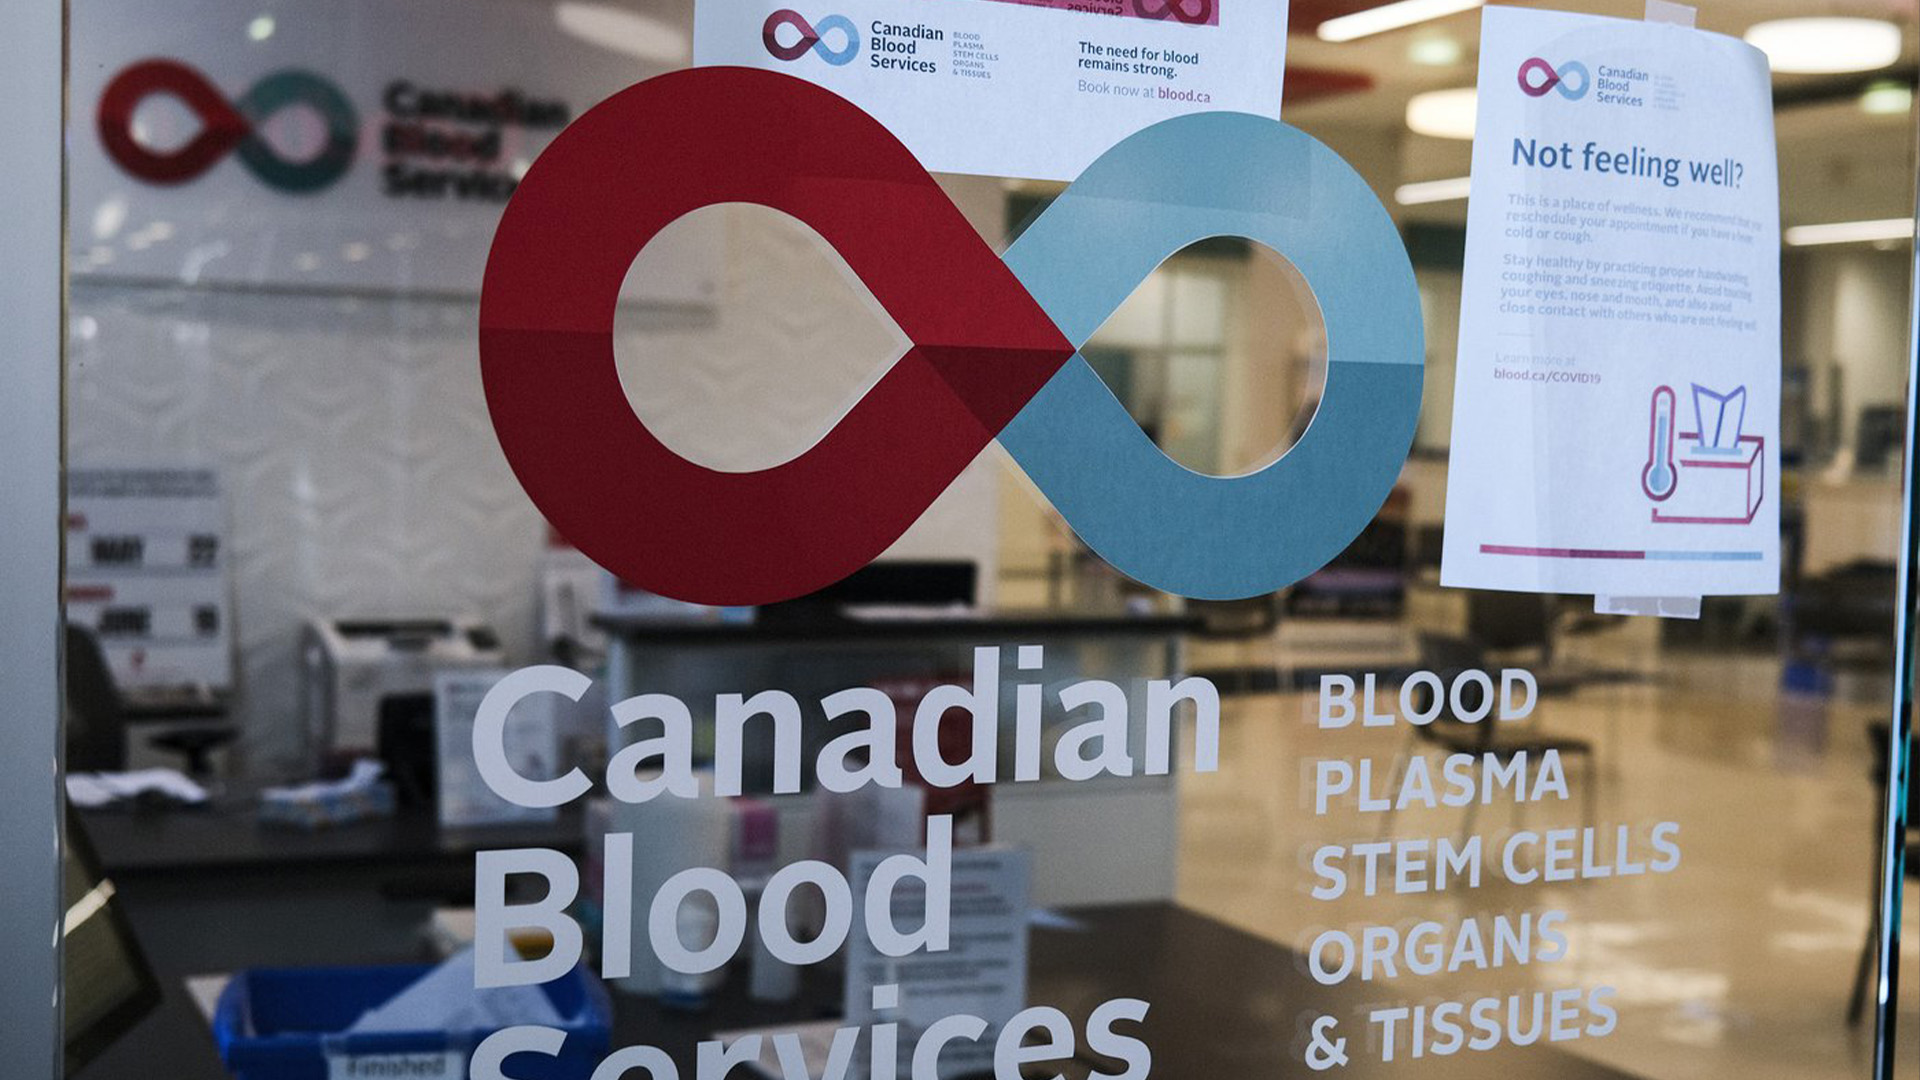 Une clinique de collecte de sang photographiée dans un centre commercial de Calgary, en Alberta, le vendredi 27 mars 2020.&nbsp;La Société canadienne du sang affirme avoir du mal à reconstituer un approvisionnement national extrêmement bas causé par la pandémie de COVID-19.